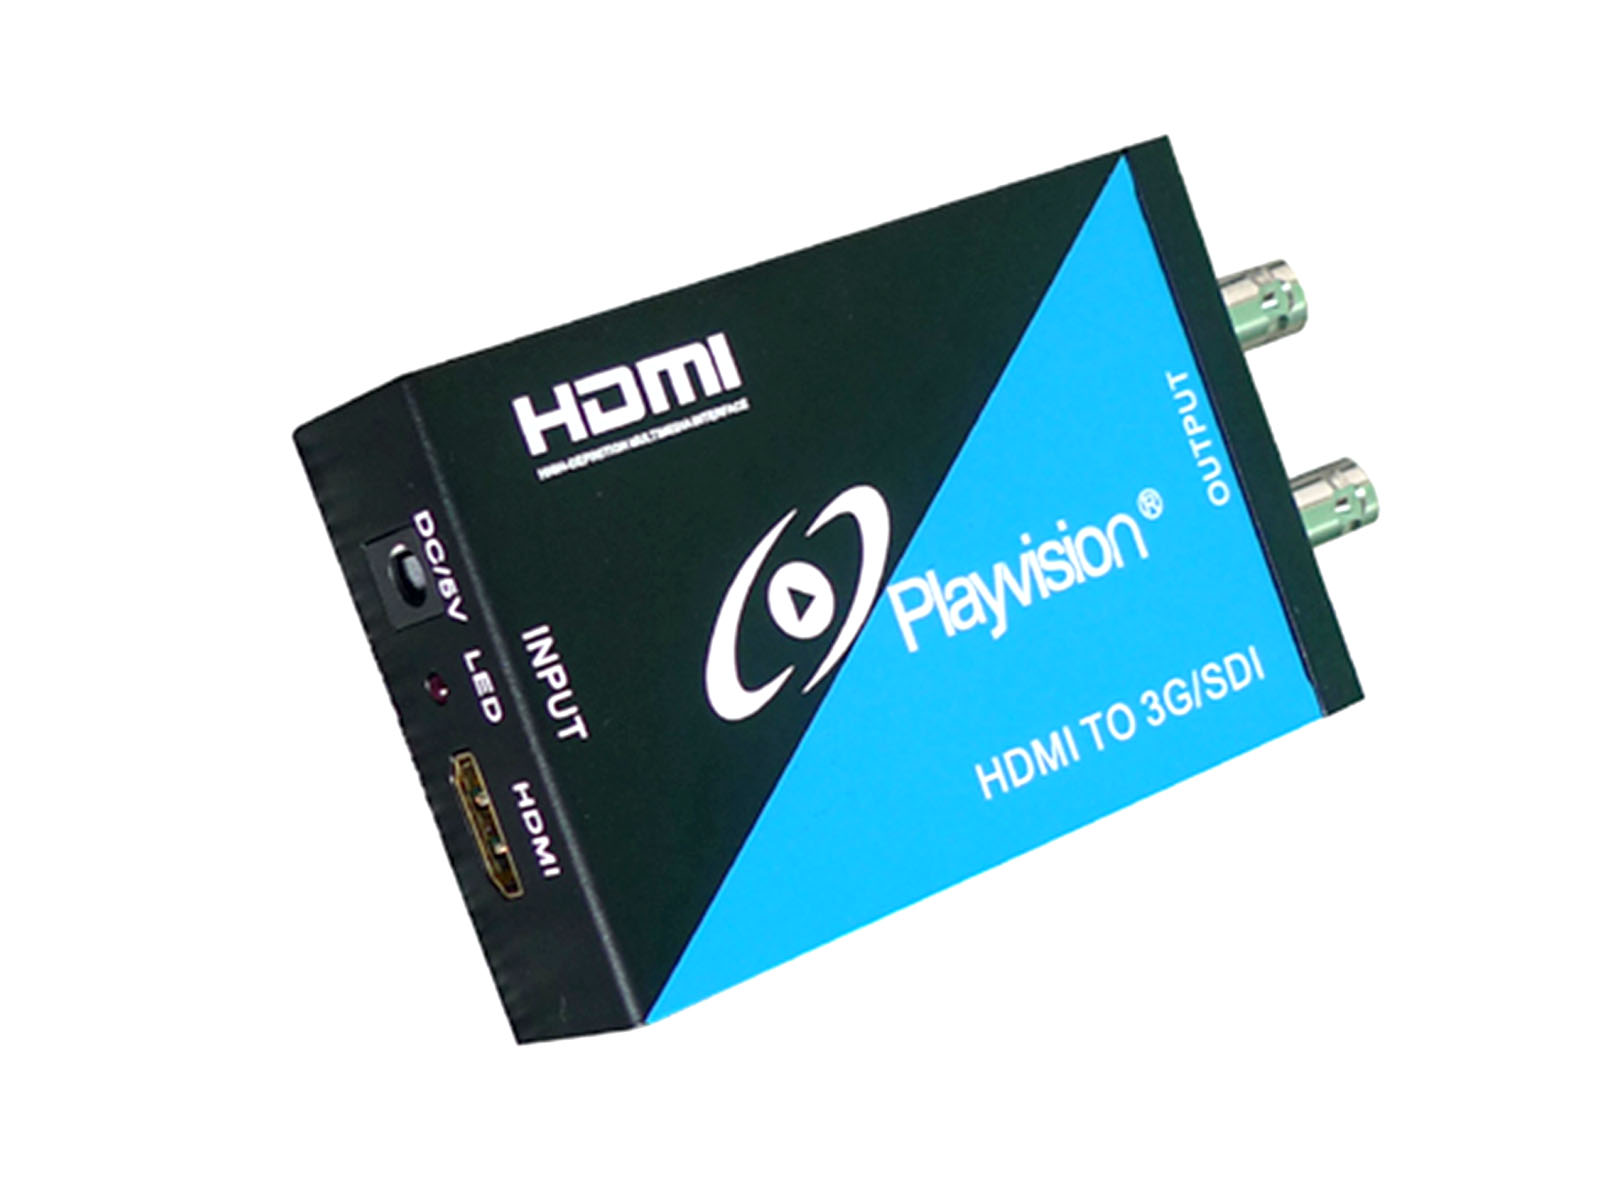 HDMI to 3G SDI